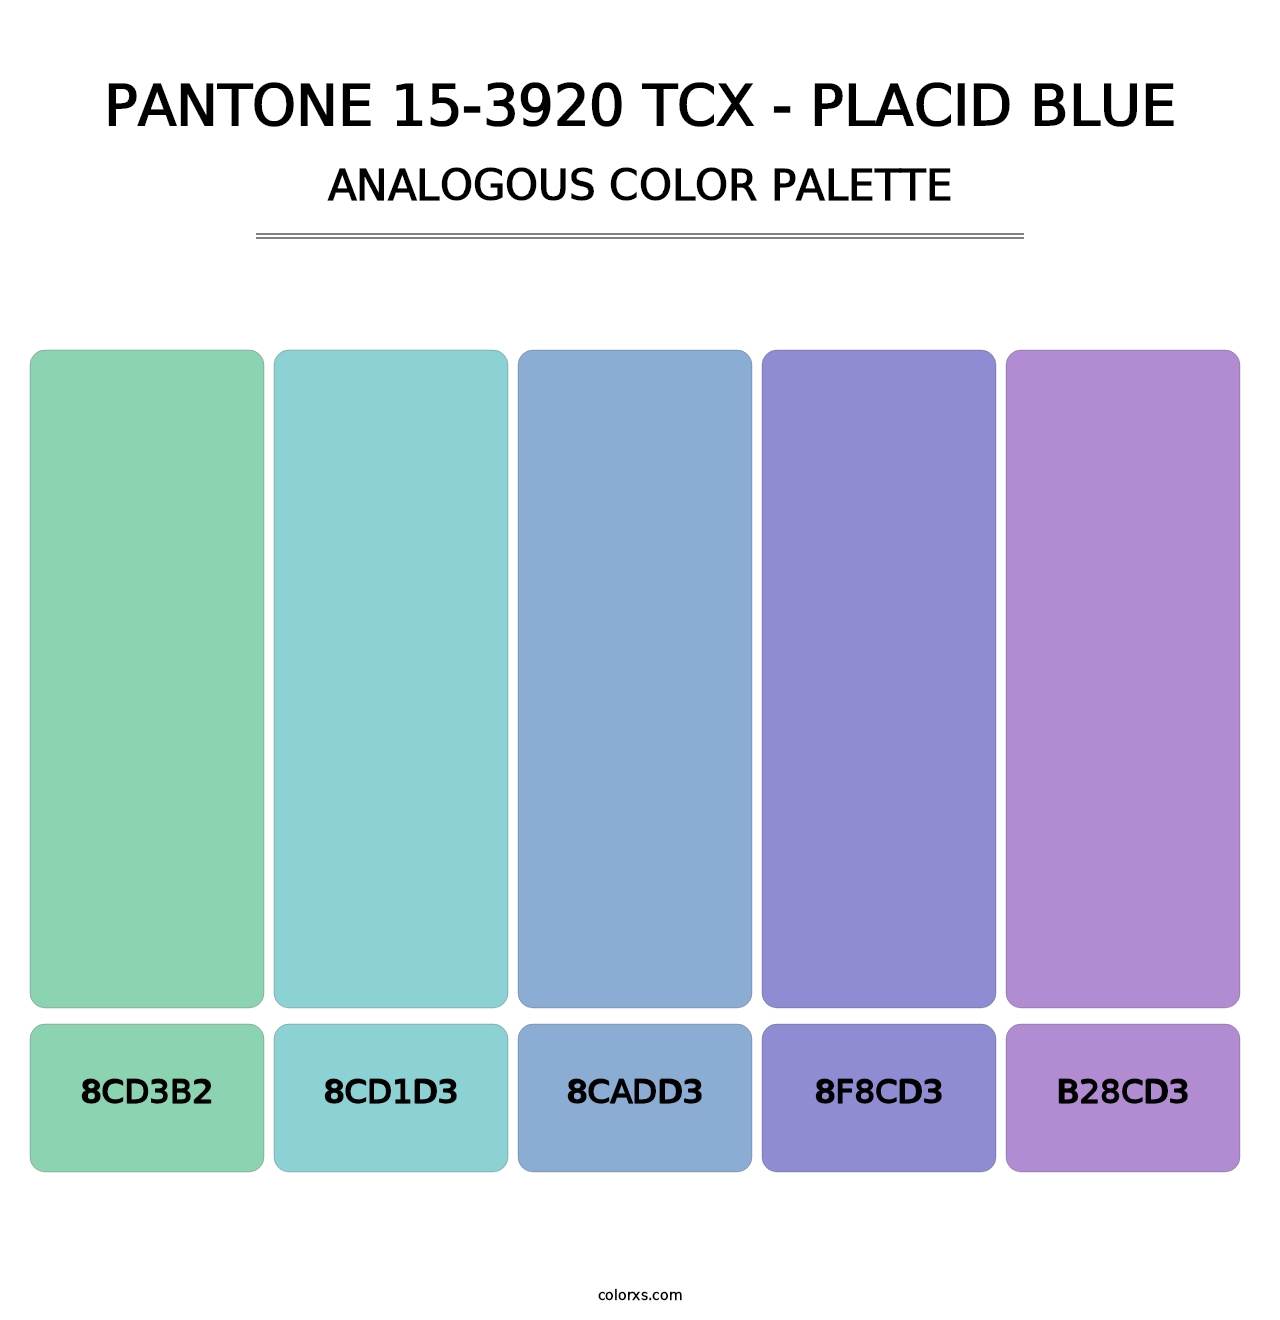 PANTONE 15-3920 TCX - Placid Blue - Analogous Color Palette